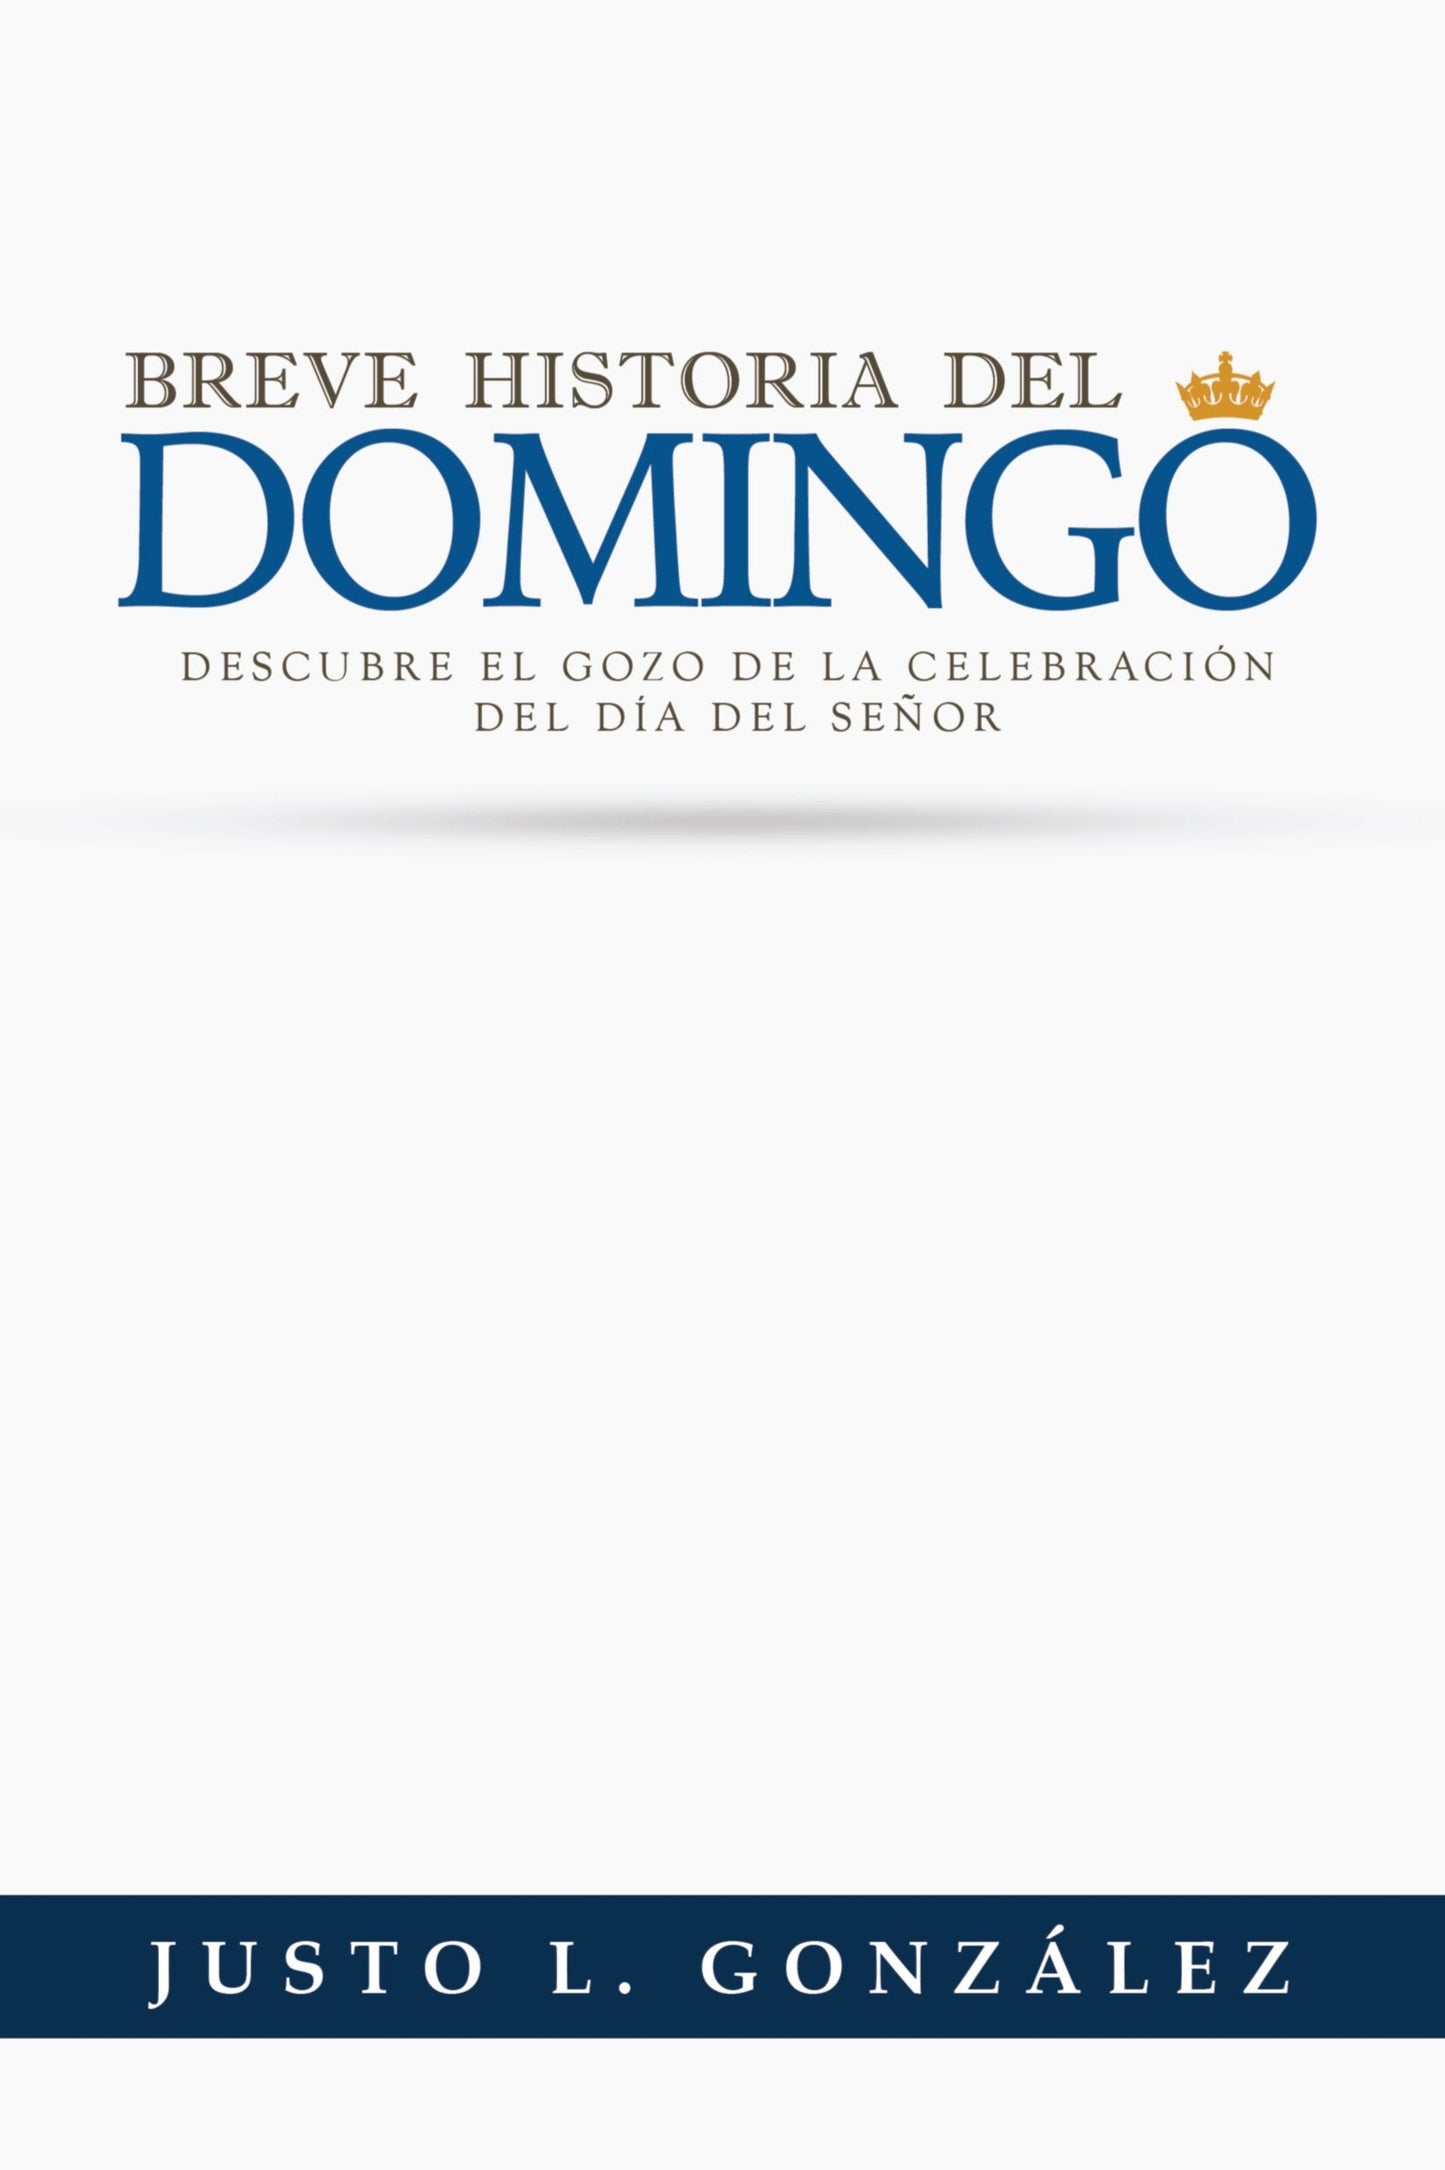 Breve Historia del Domingo de venta en Colombia | Justo Gonzalez | Mundo Hispano | PalabraInspirada.com